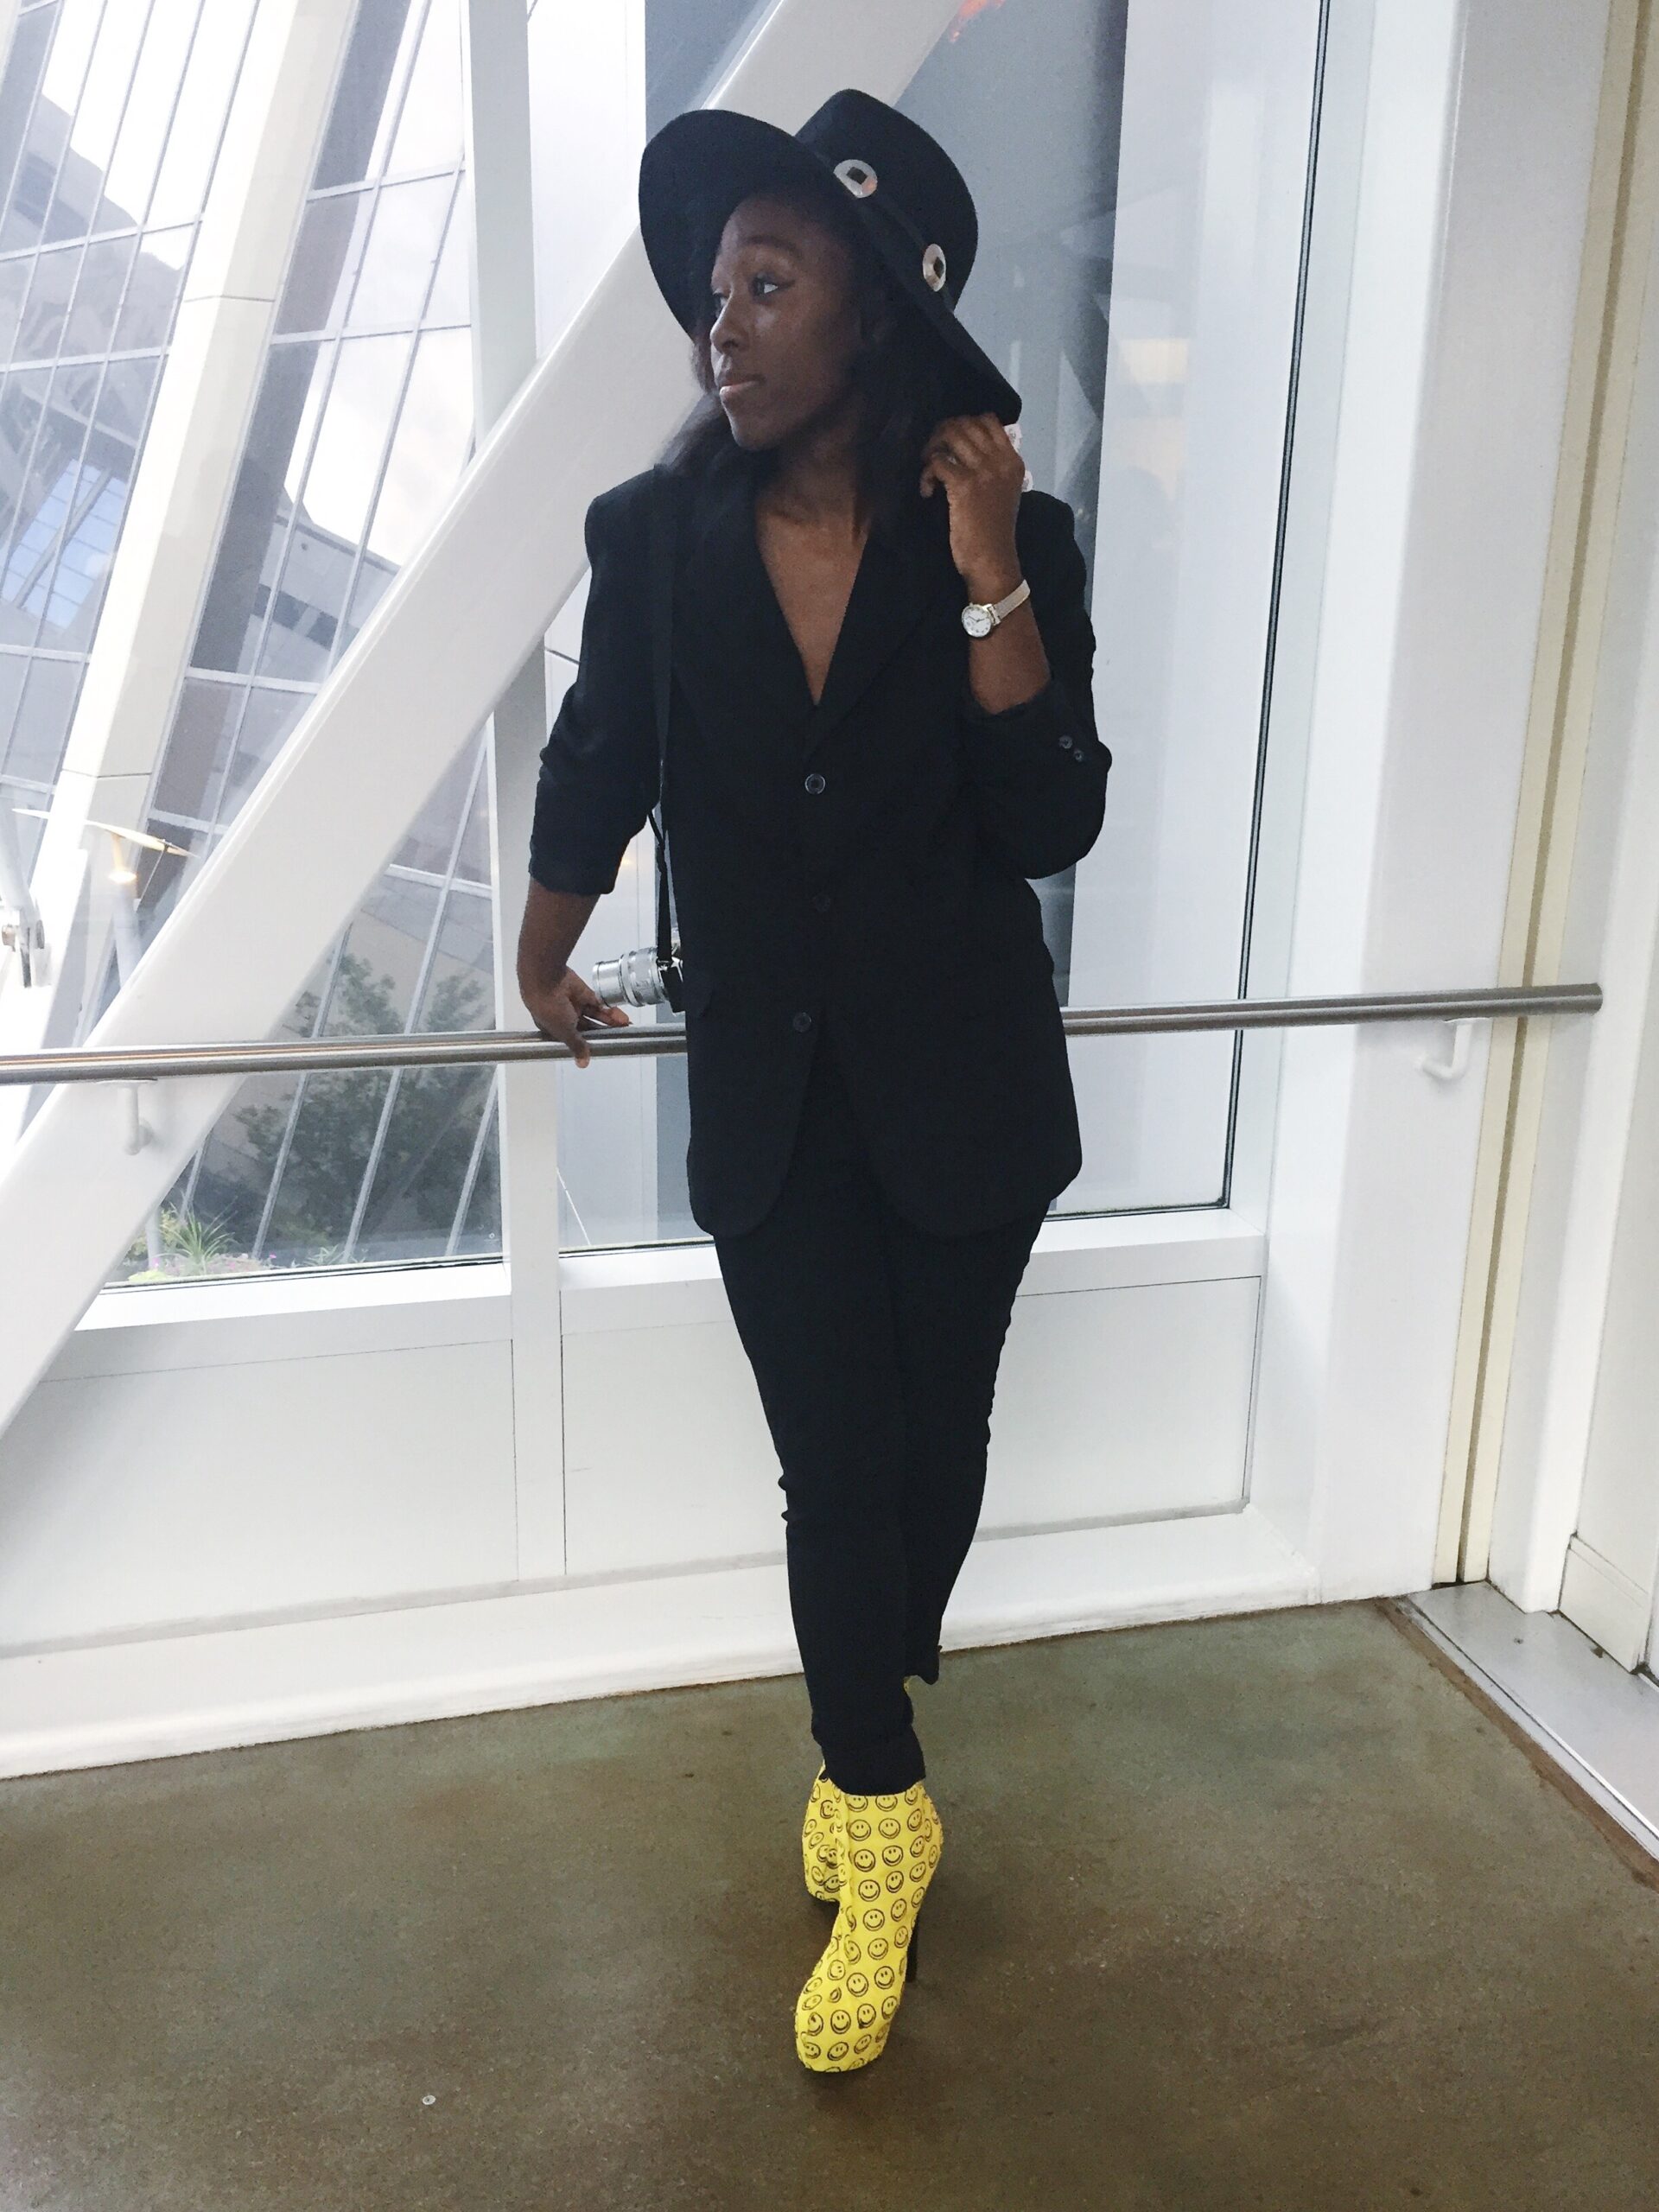 Jordan Taylor C - Smiles All Around Her Campus Fashion Week Atlanta